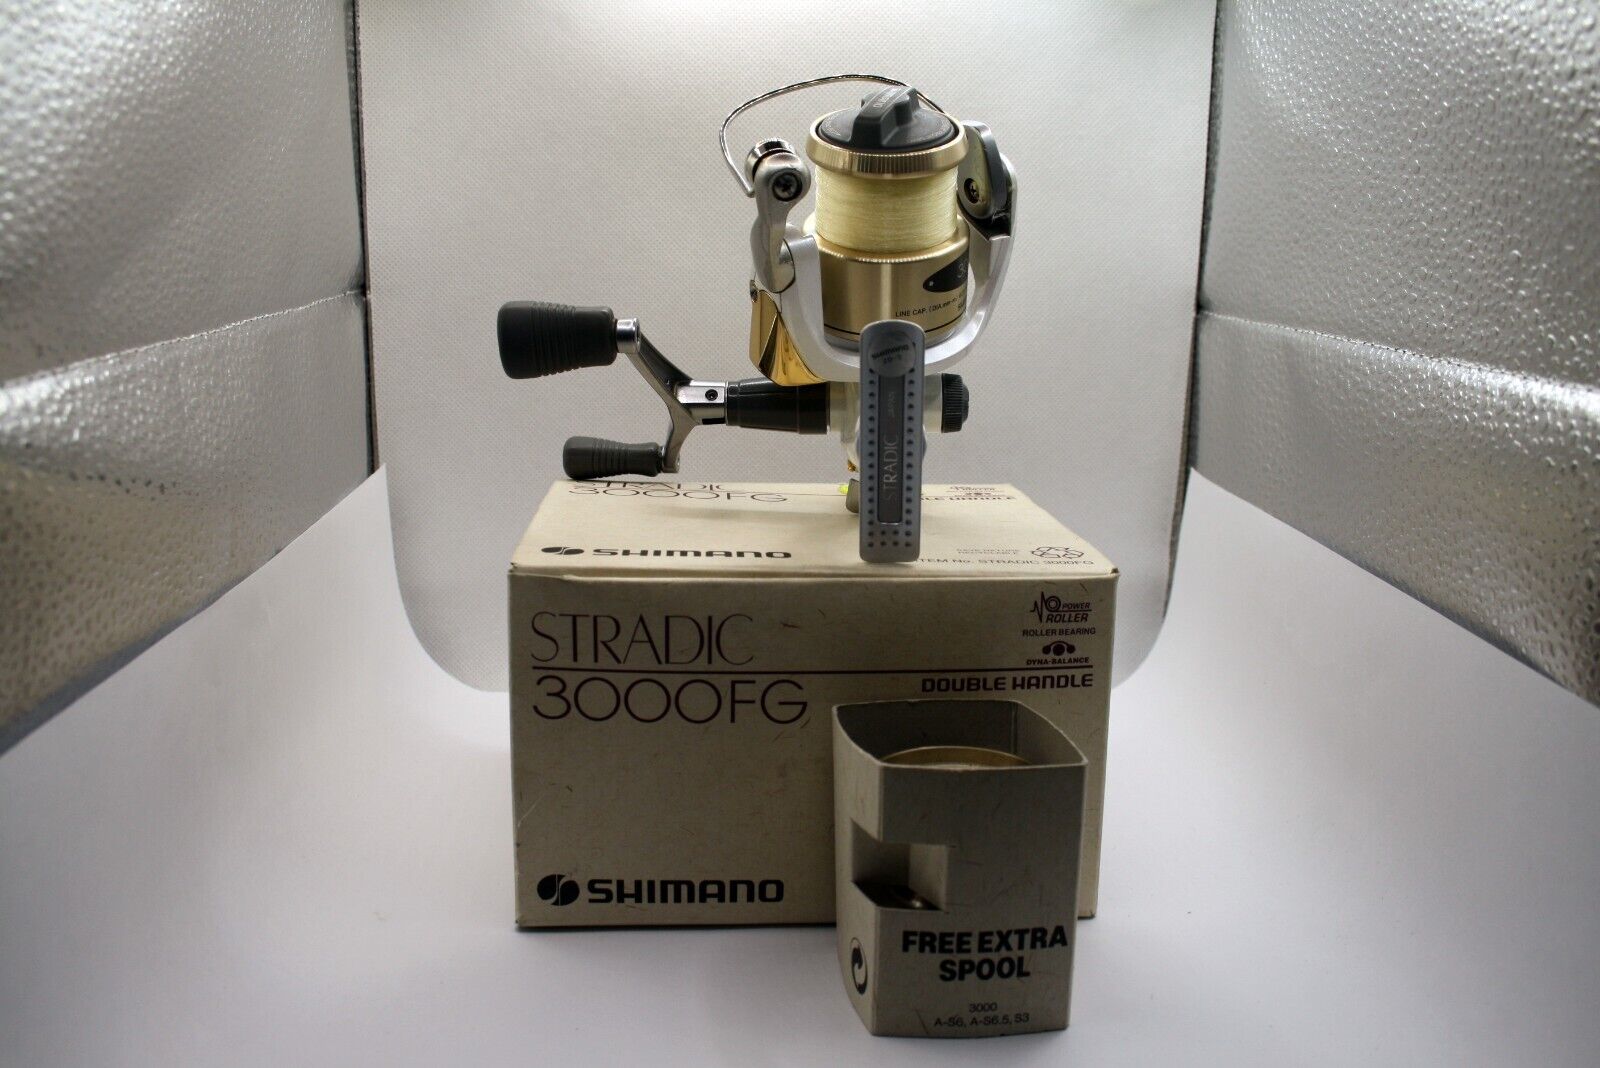 Mulinello Shimano STRADIC 3000FG usato mulinello funzionante